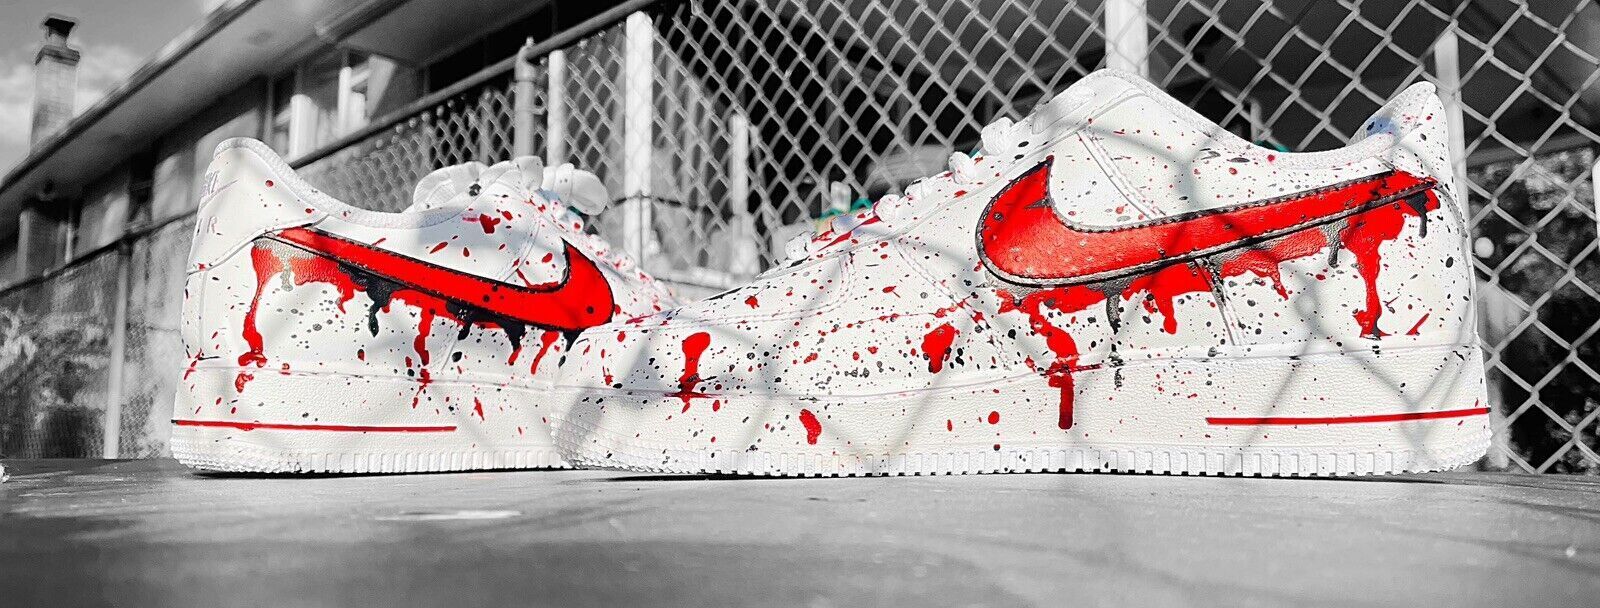 Nike Air Force 1 Custom Red White & Blue Splatter USA Graffiti Shoes Men Women